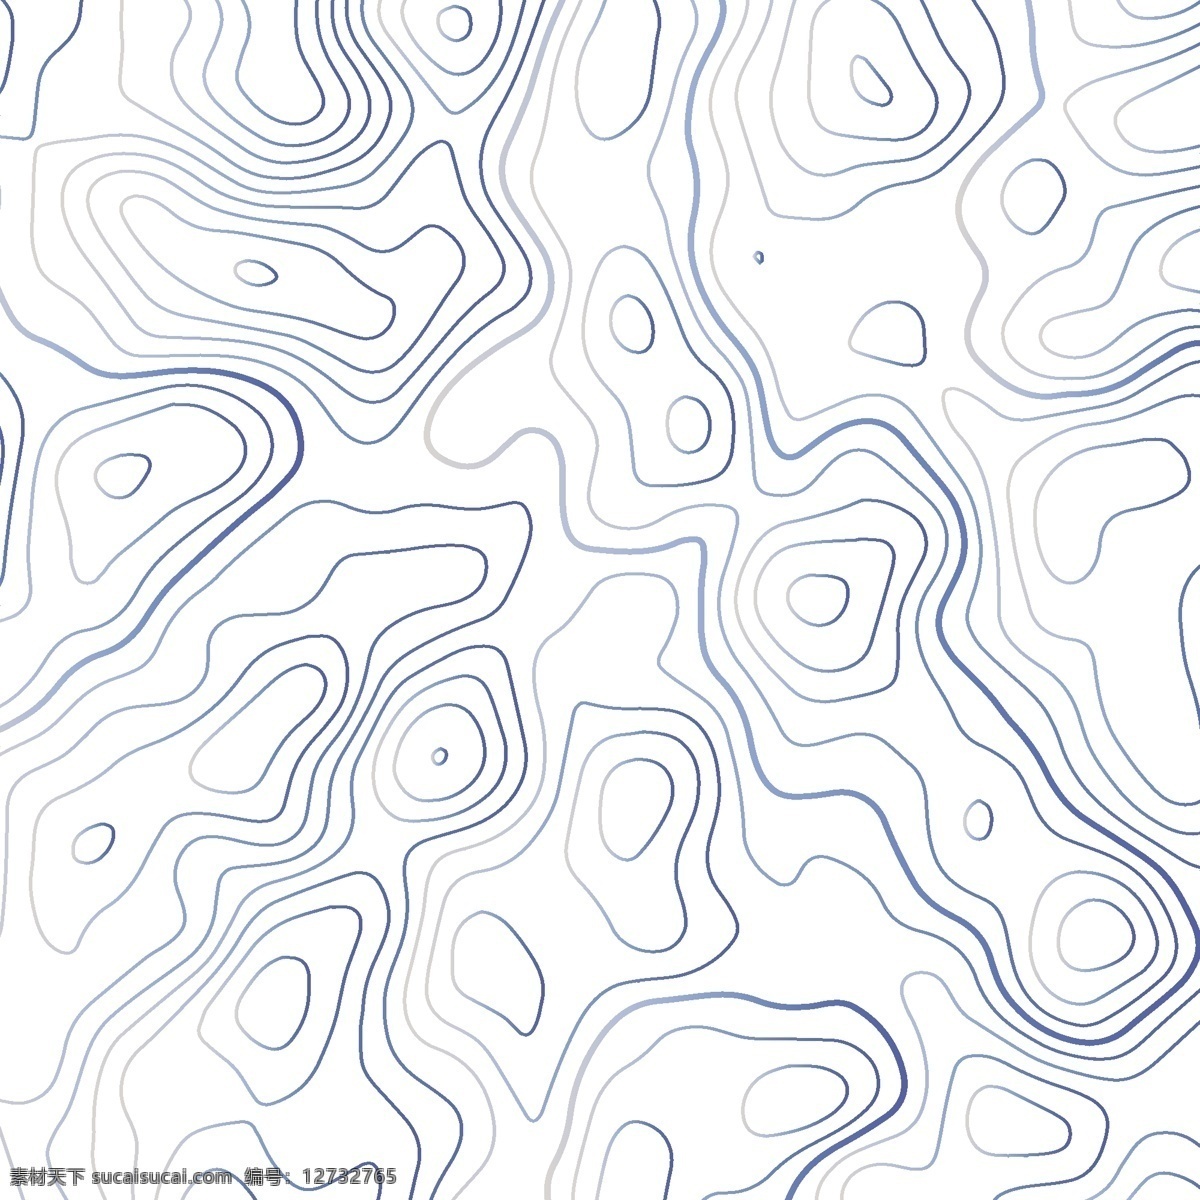 地形抽象底纹 不规则 抽象 底纹 纹理 曲线 淡彩 矢量 地形 底纹边框 抽象底纹